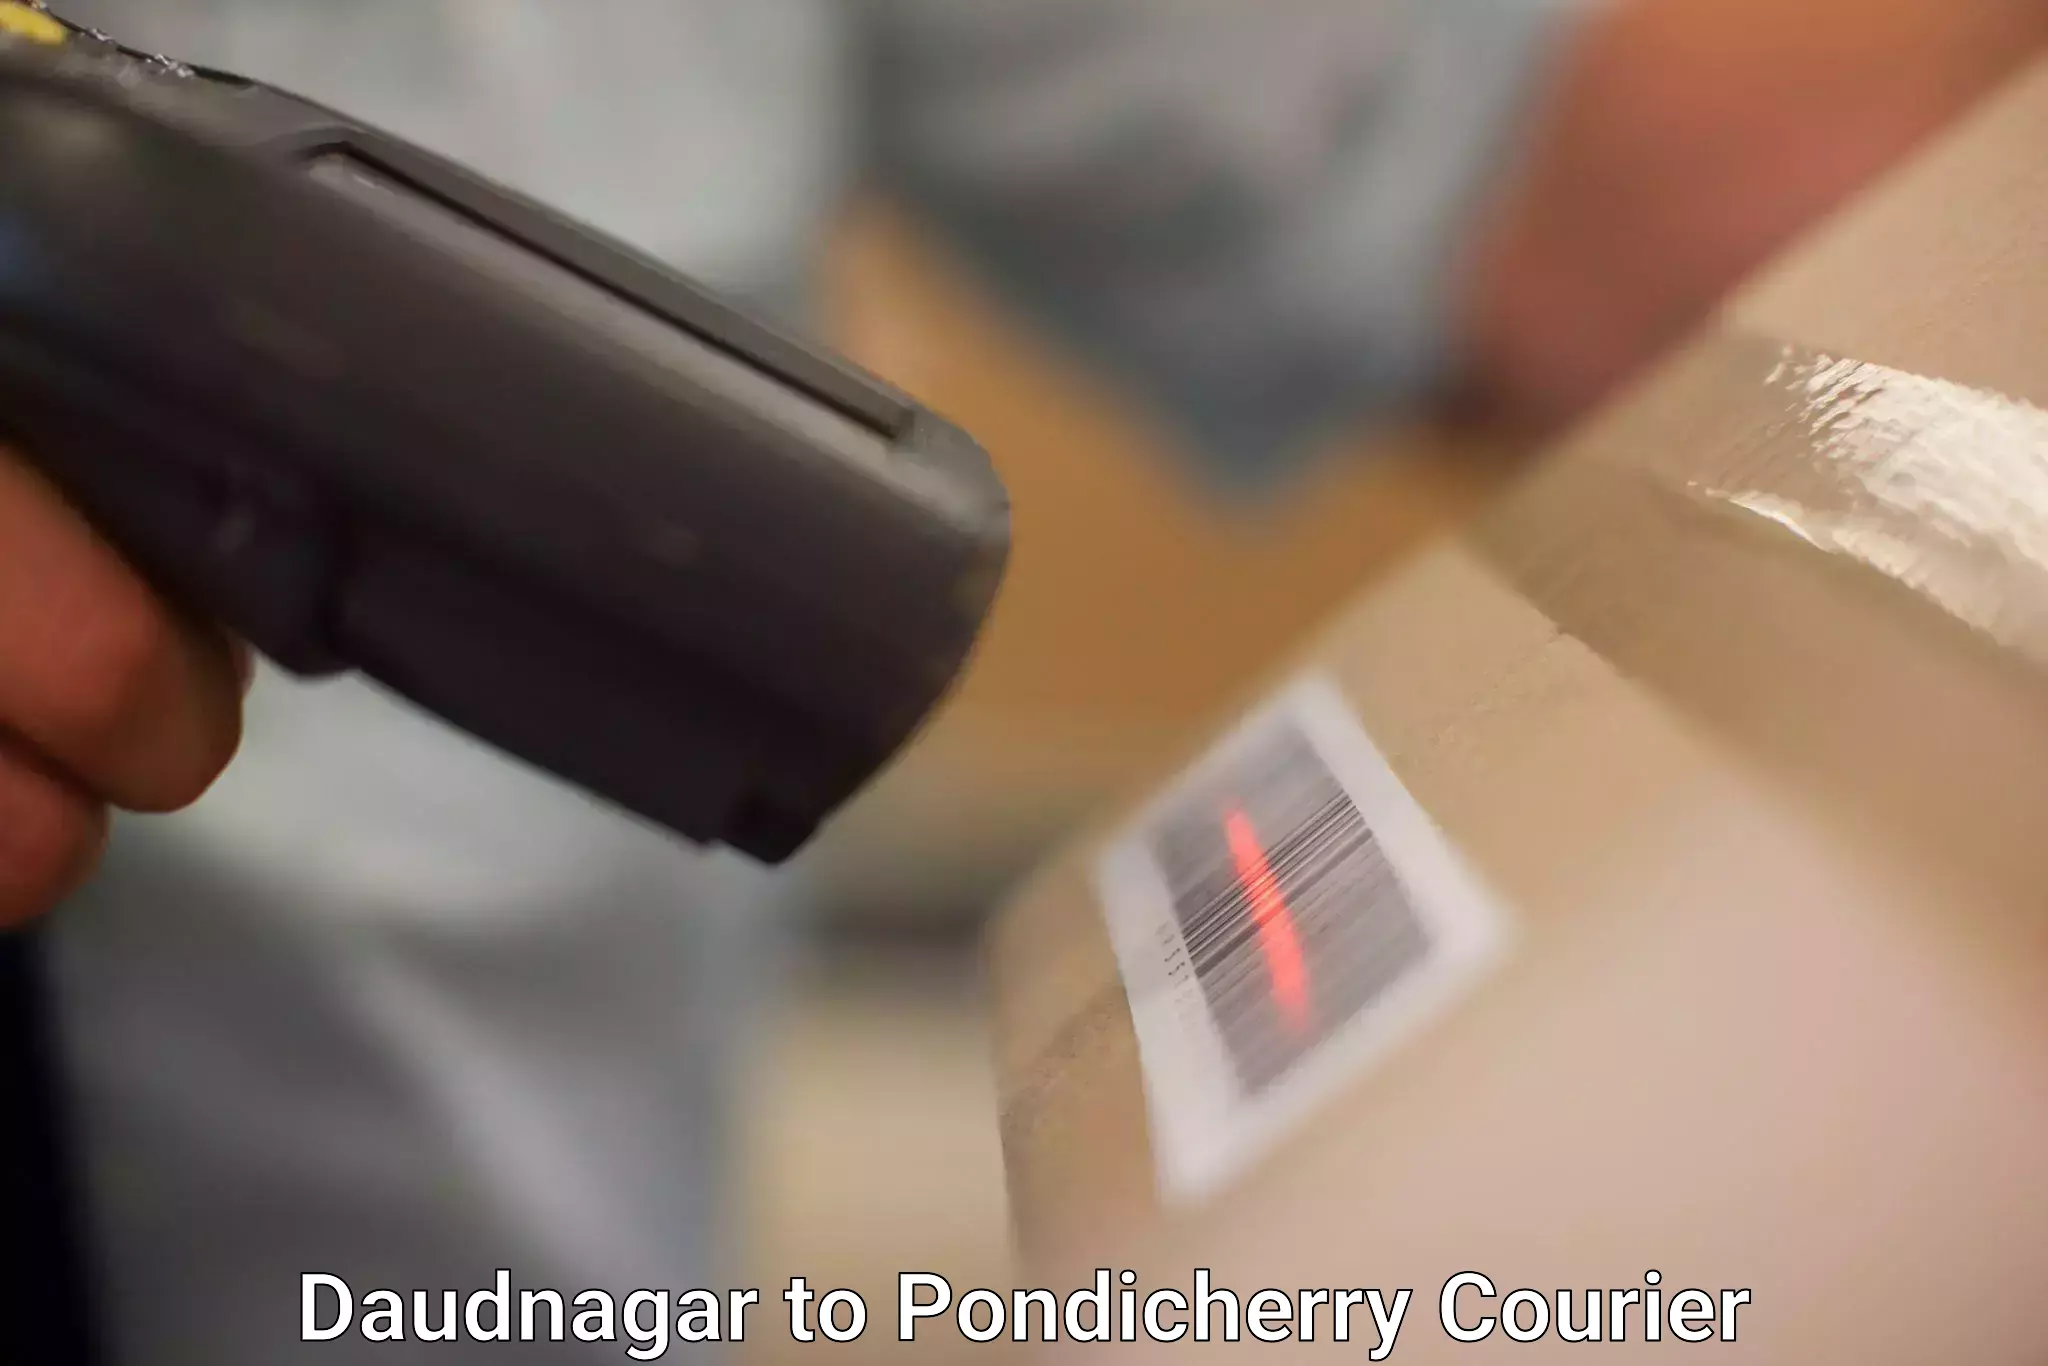 User-friendly courier app Daudnagar to Pondicherry University